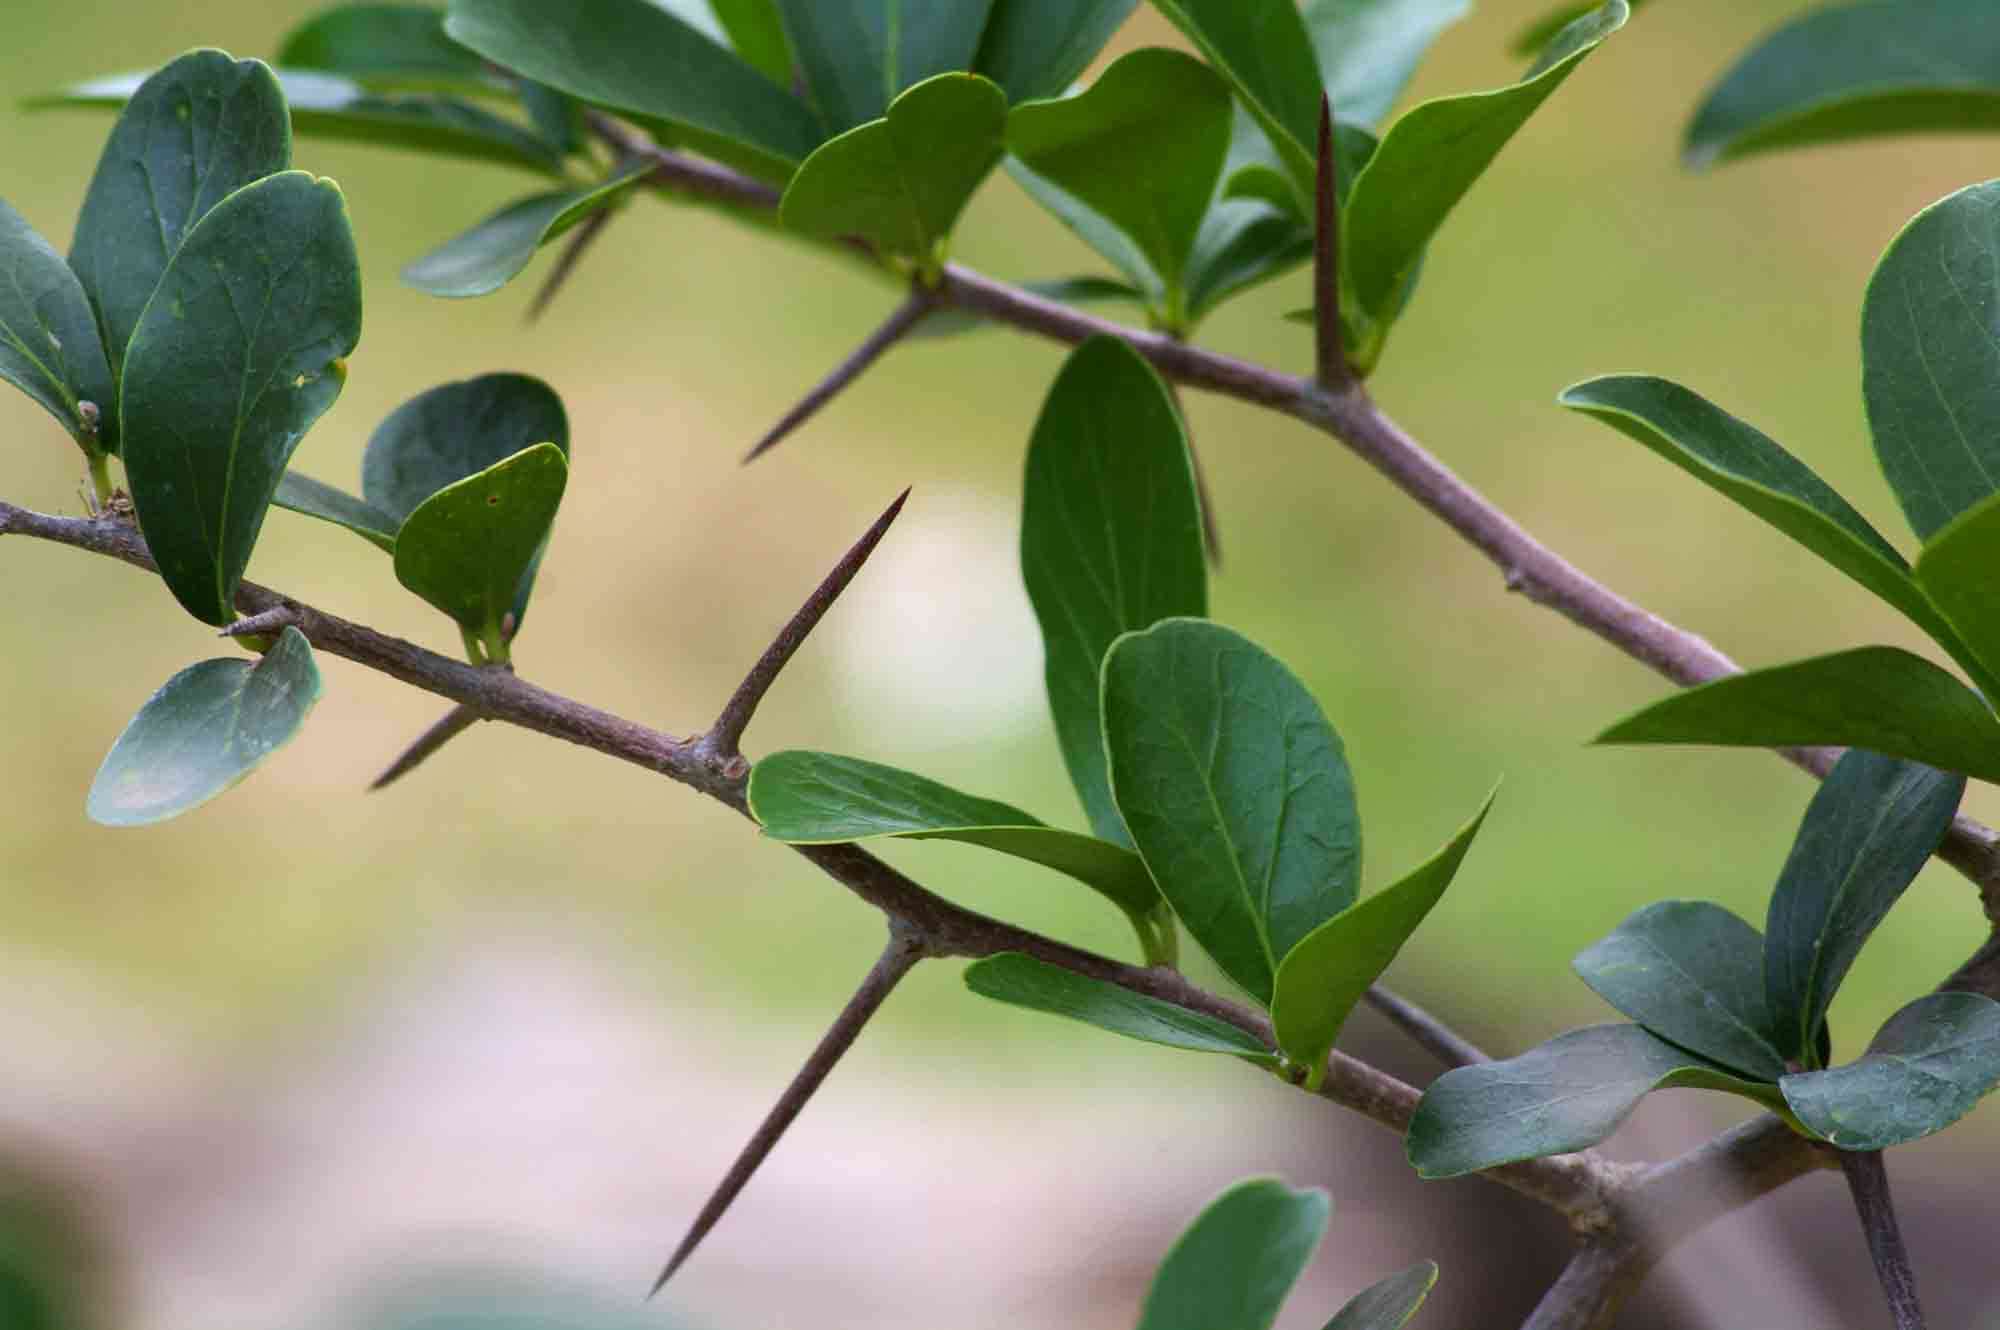 Image of Ceylon gooseberry